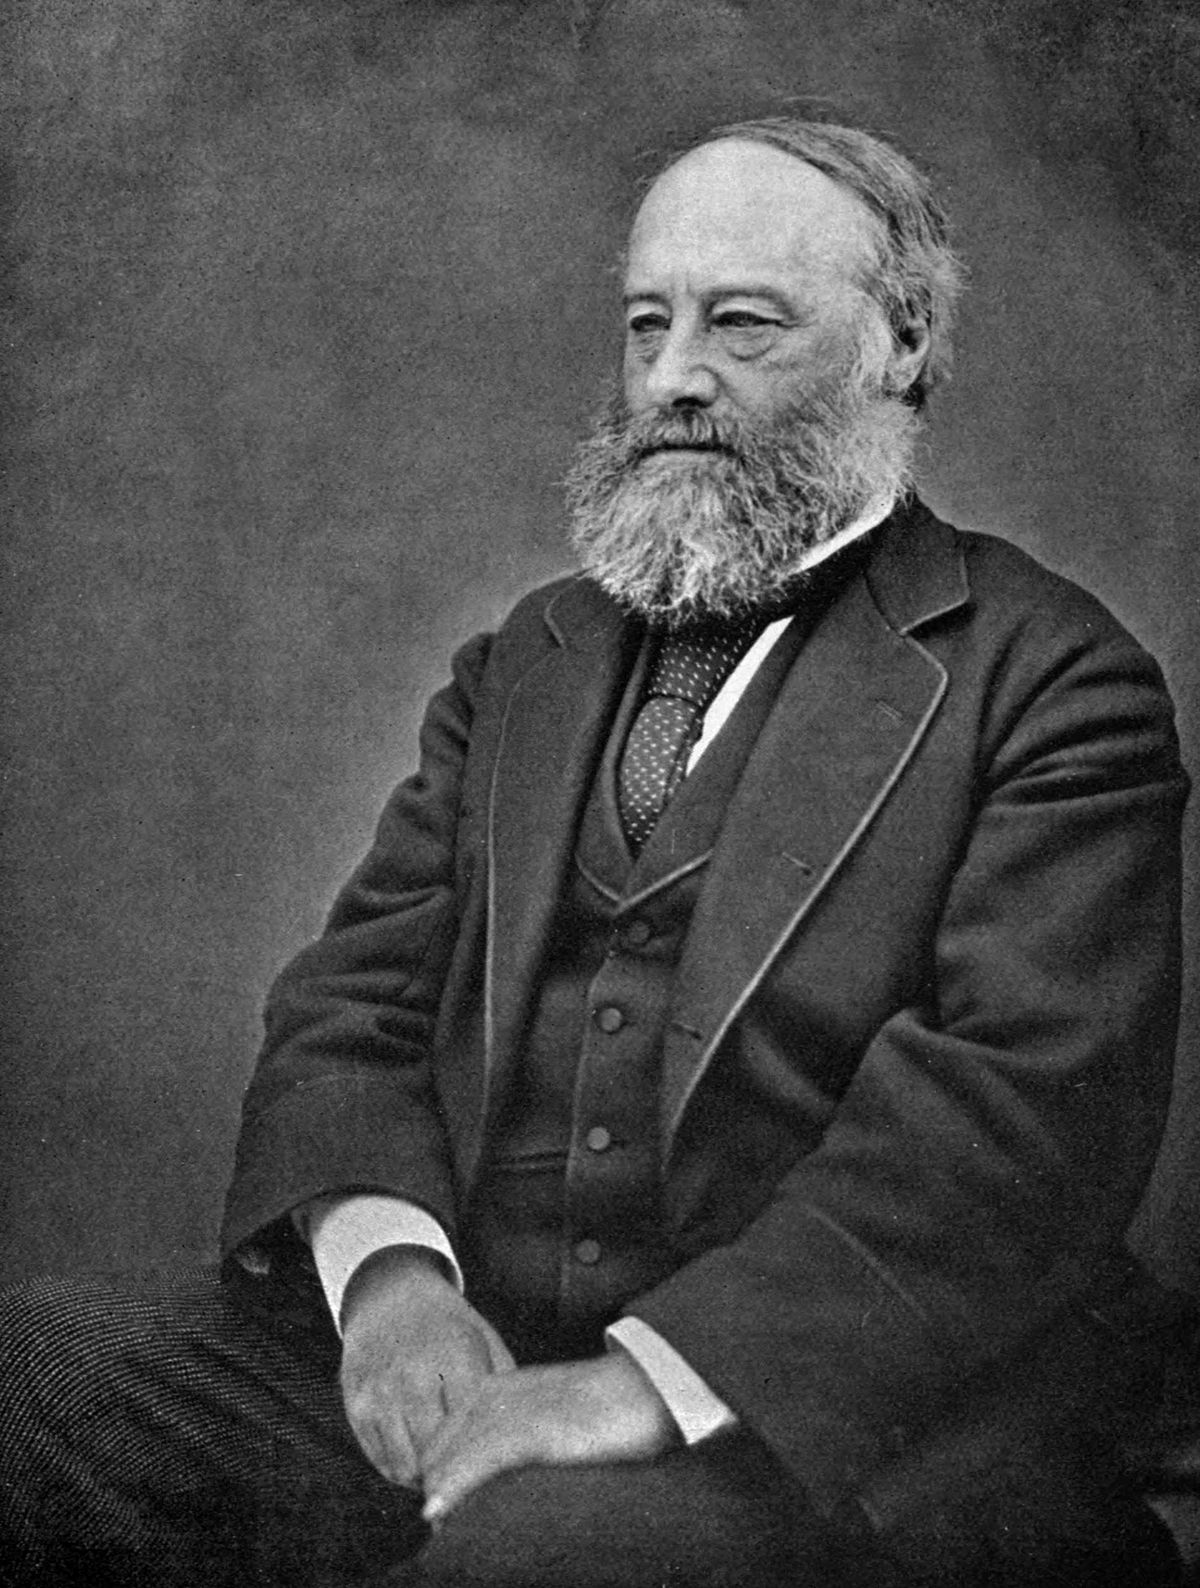 A photograph of John Prescott Joule.